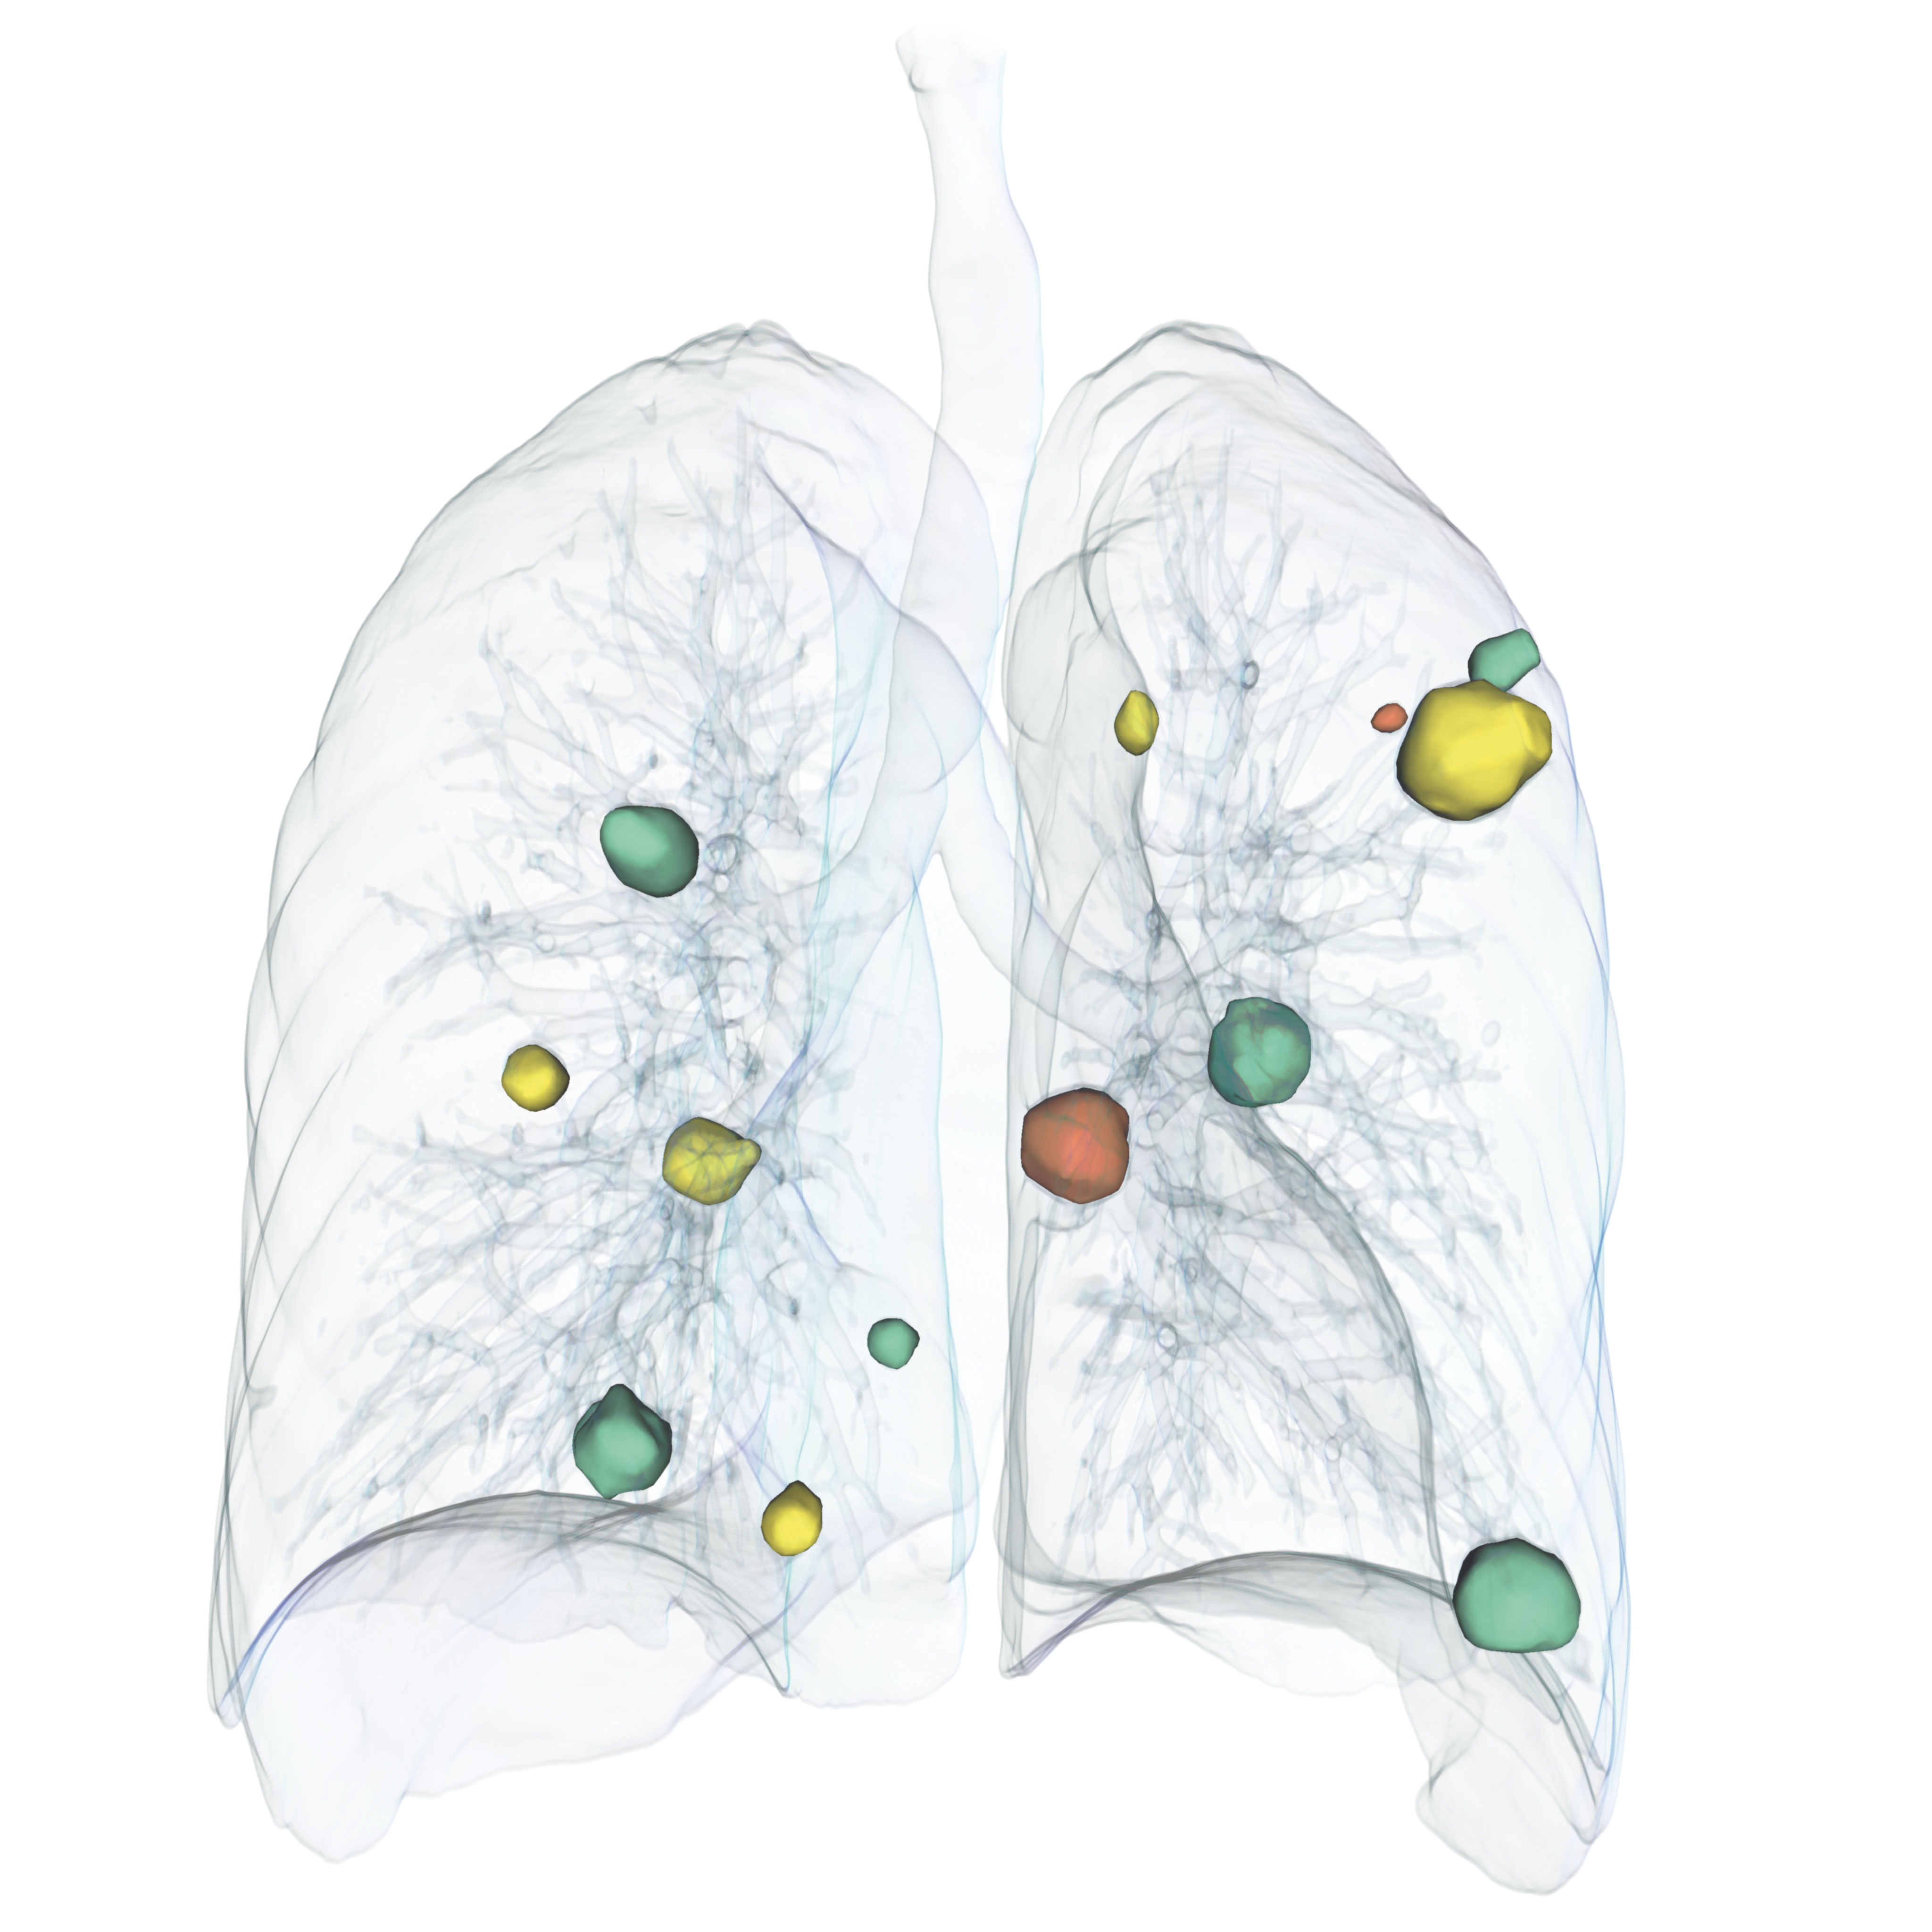 Lung Tumors Metastasis